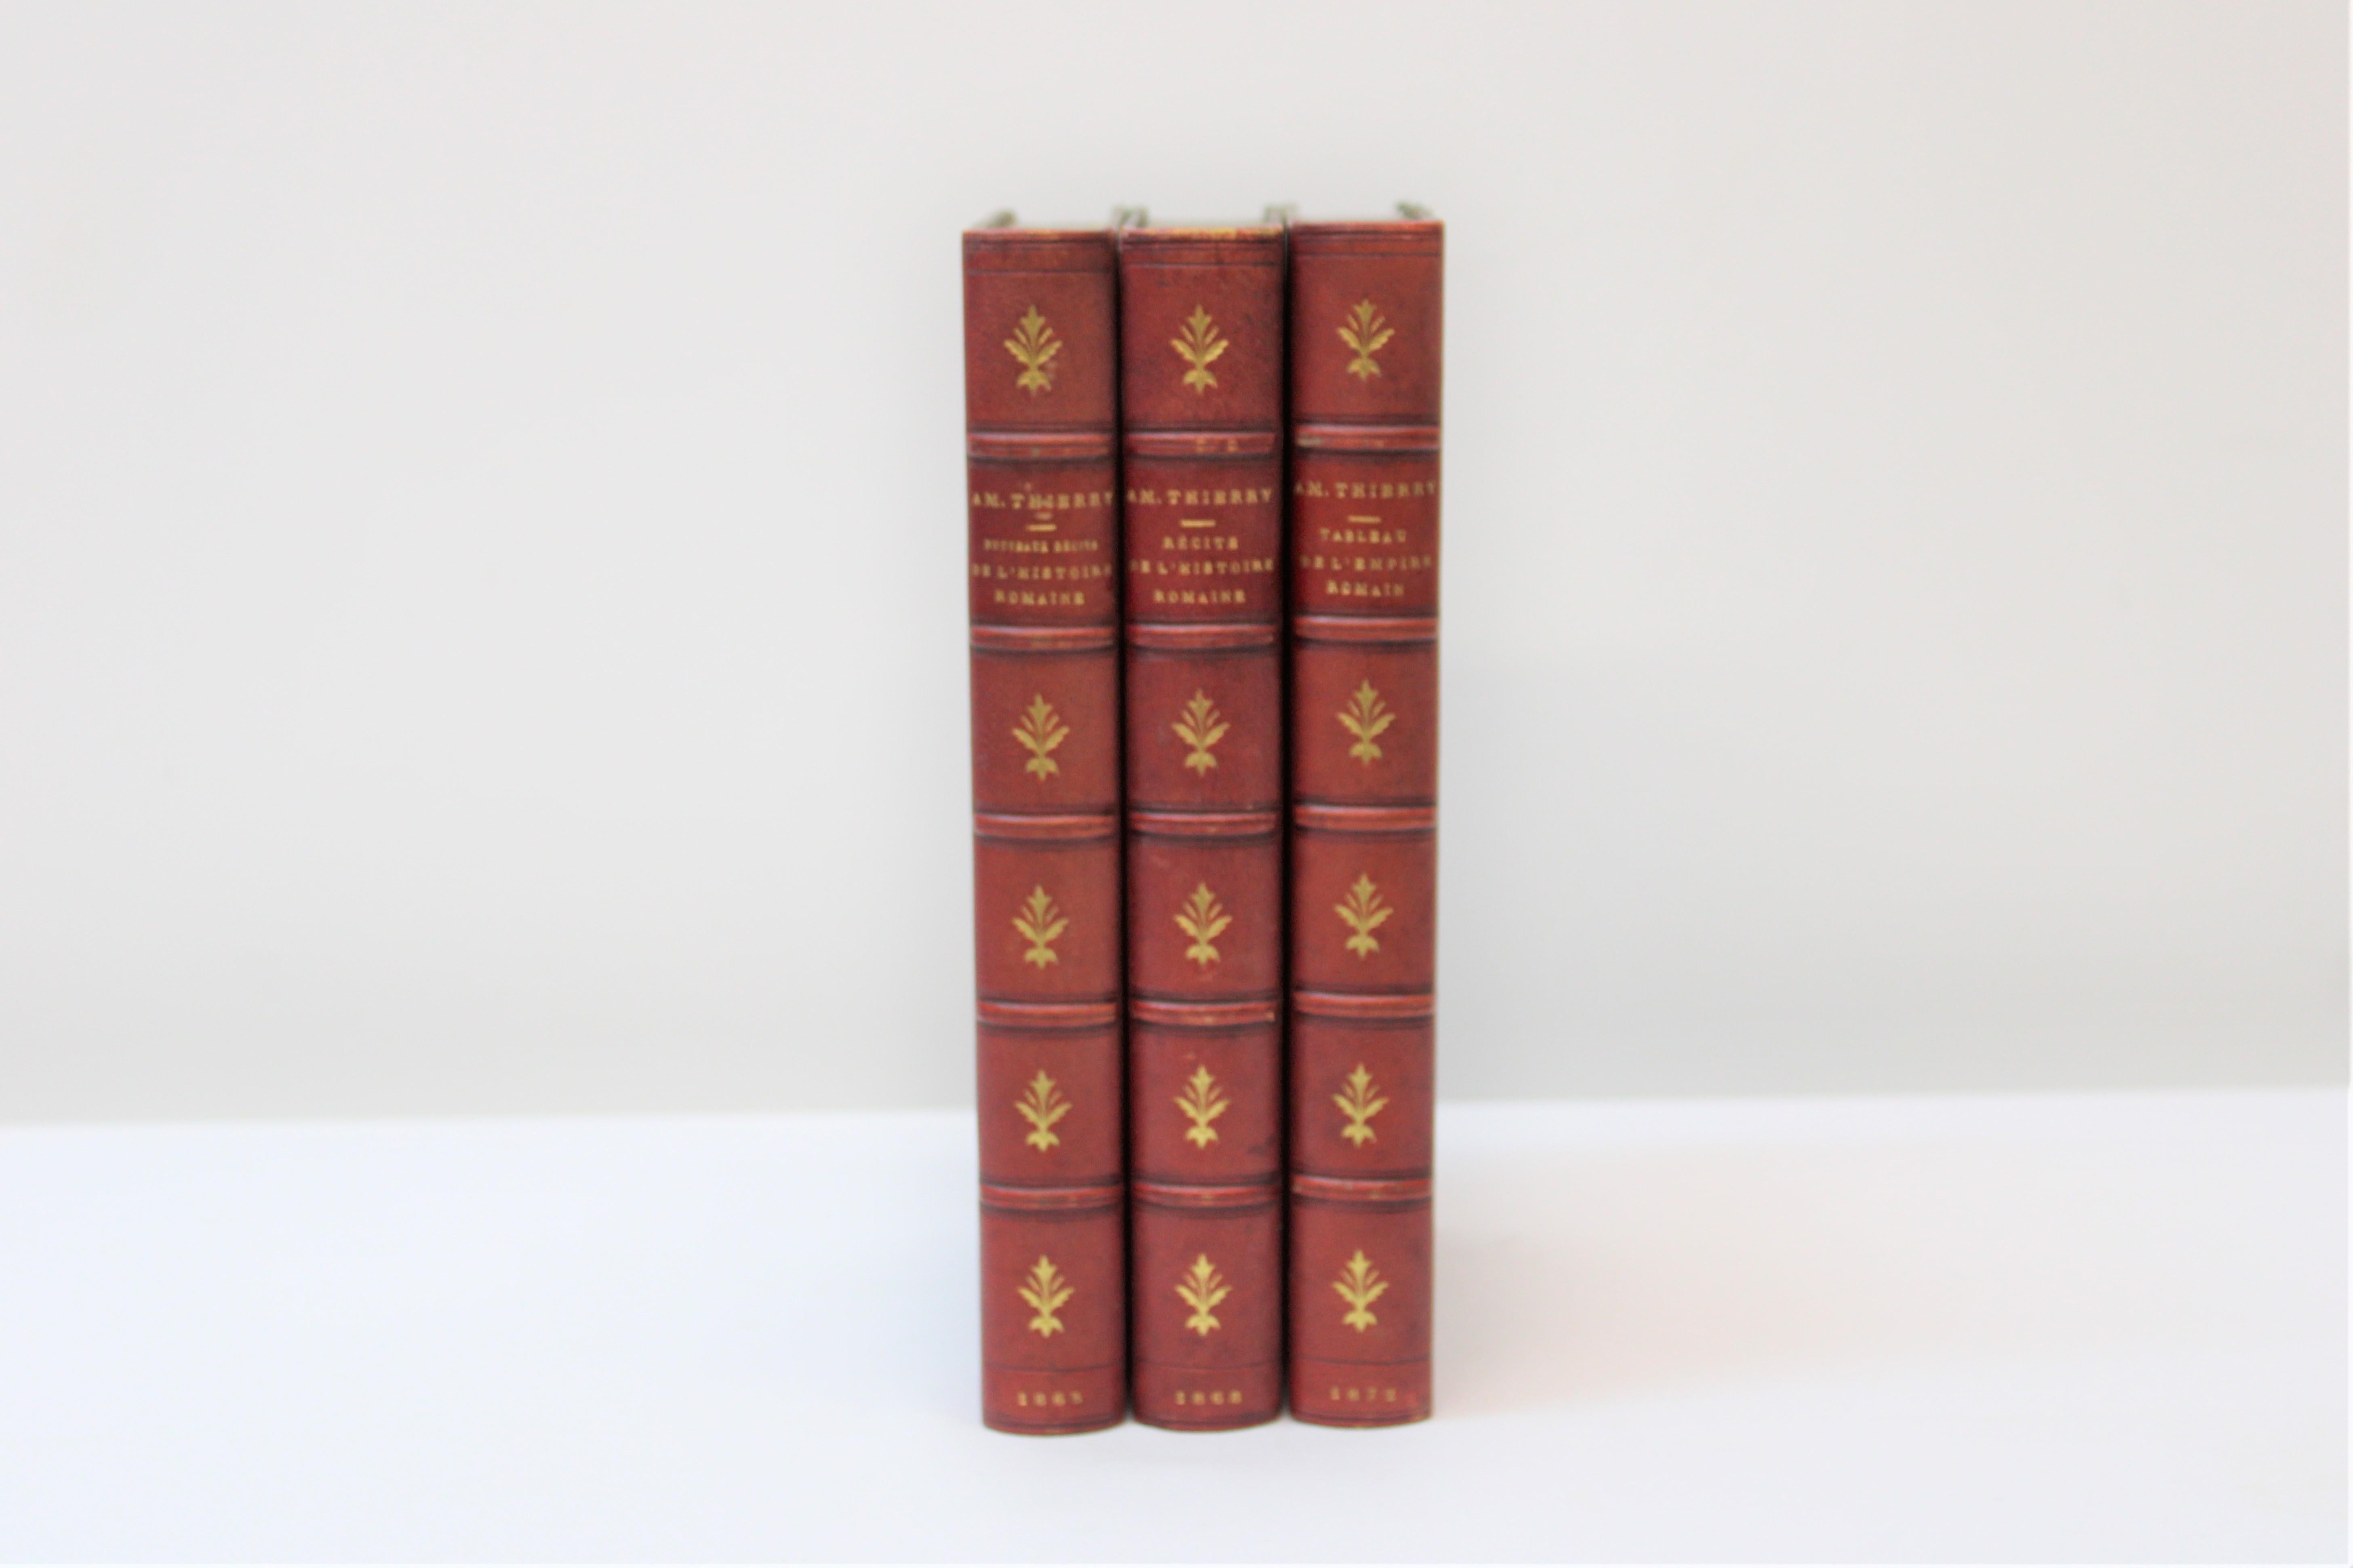 C. 19th century

Set of 3 French books

Books:

AM Thierry - N'ouveaux Recits ( De L' Histoire Romaine )
AM Thierry - Recits ( De L' Histoire Romaine )
AM Thierry - Tableau ( De L' Histoire Romaine ).